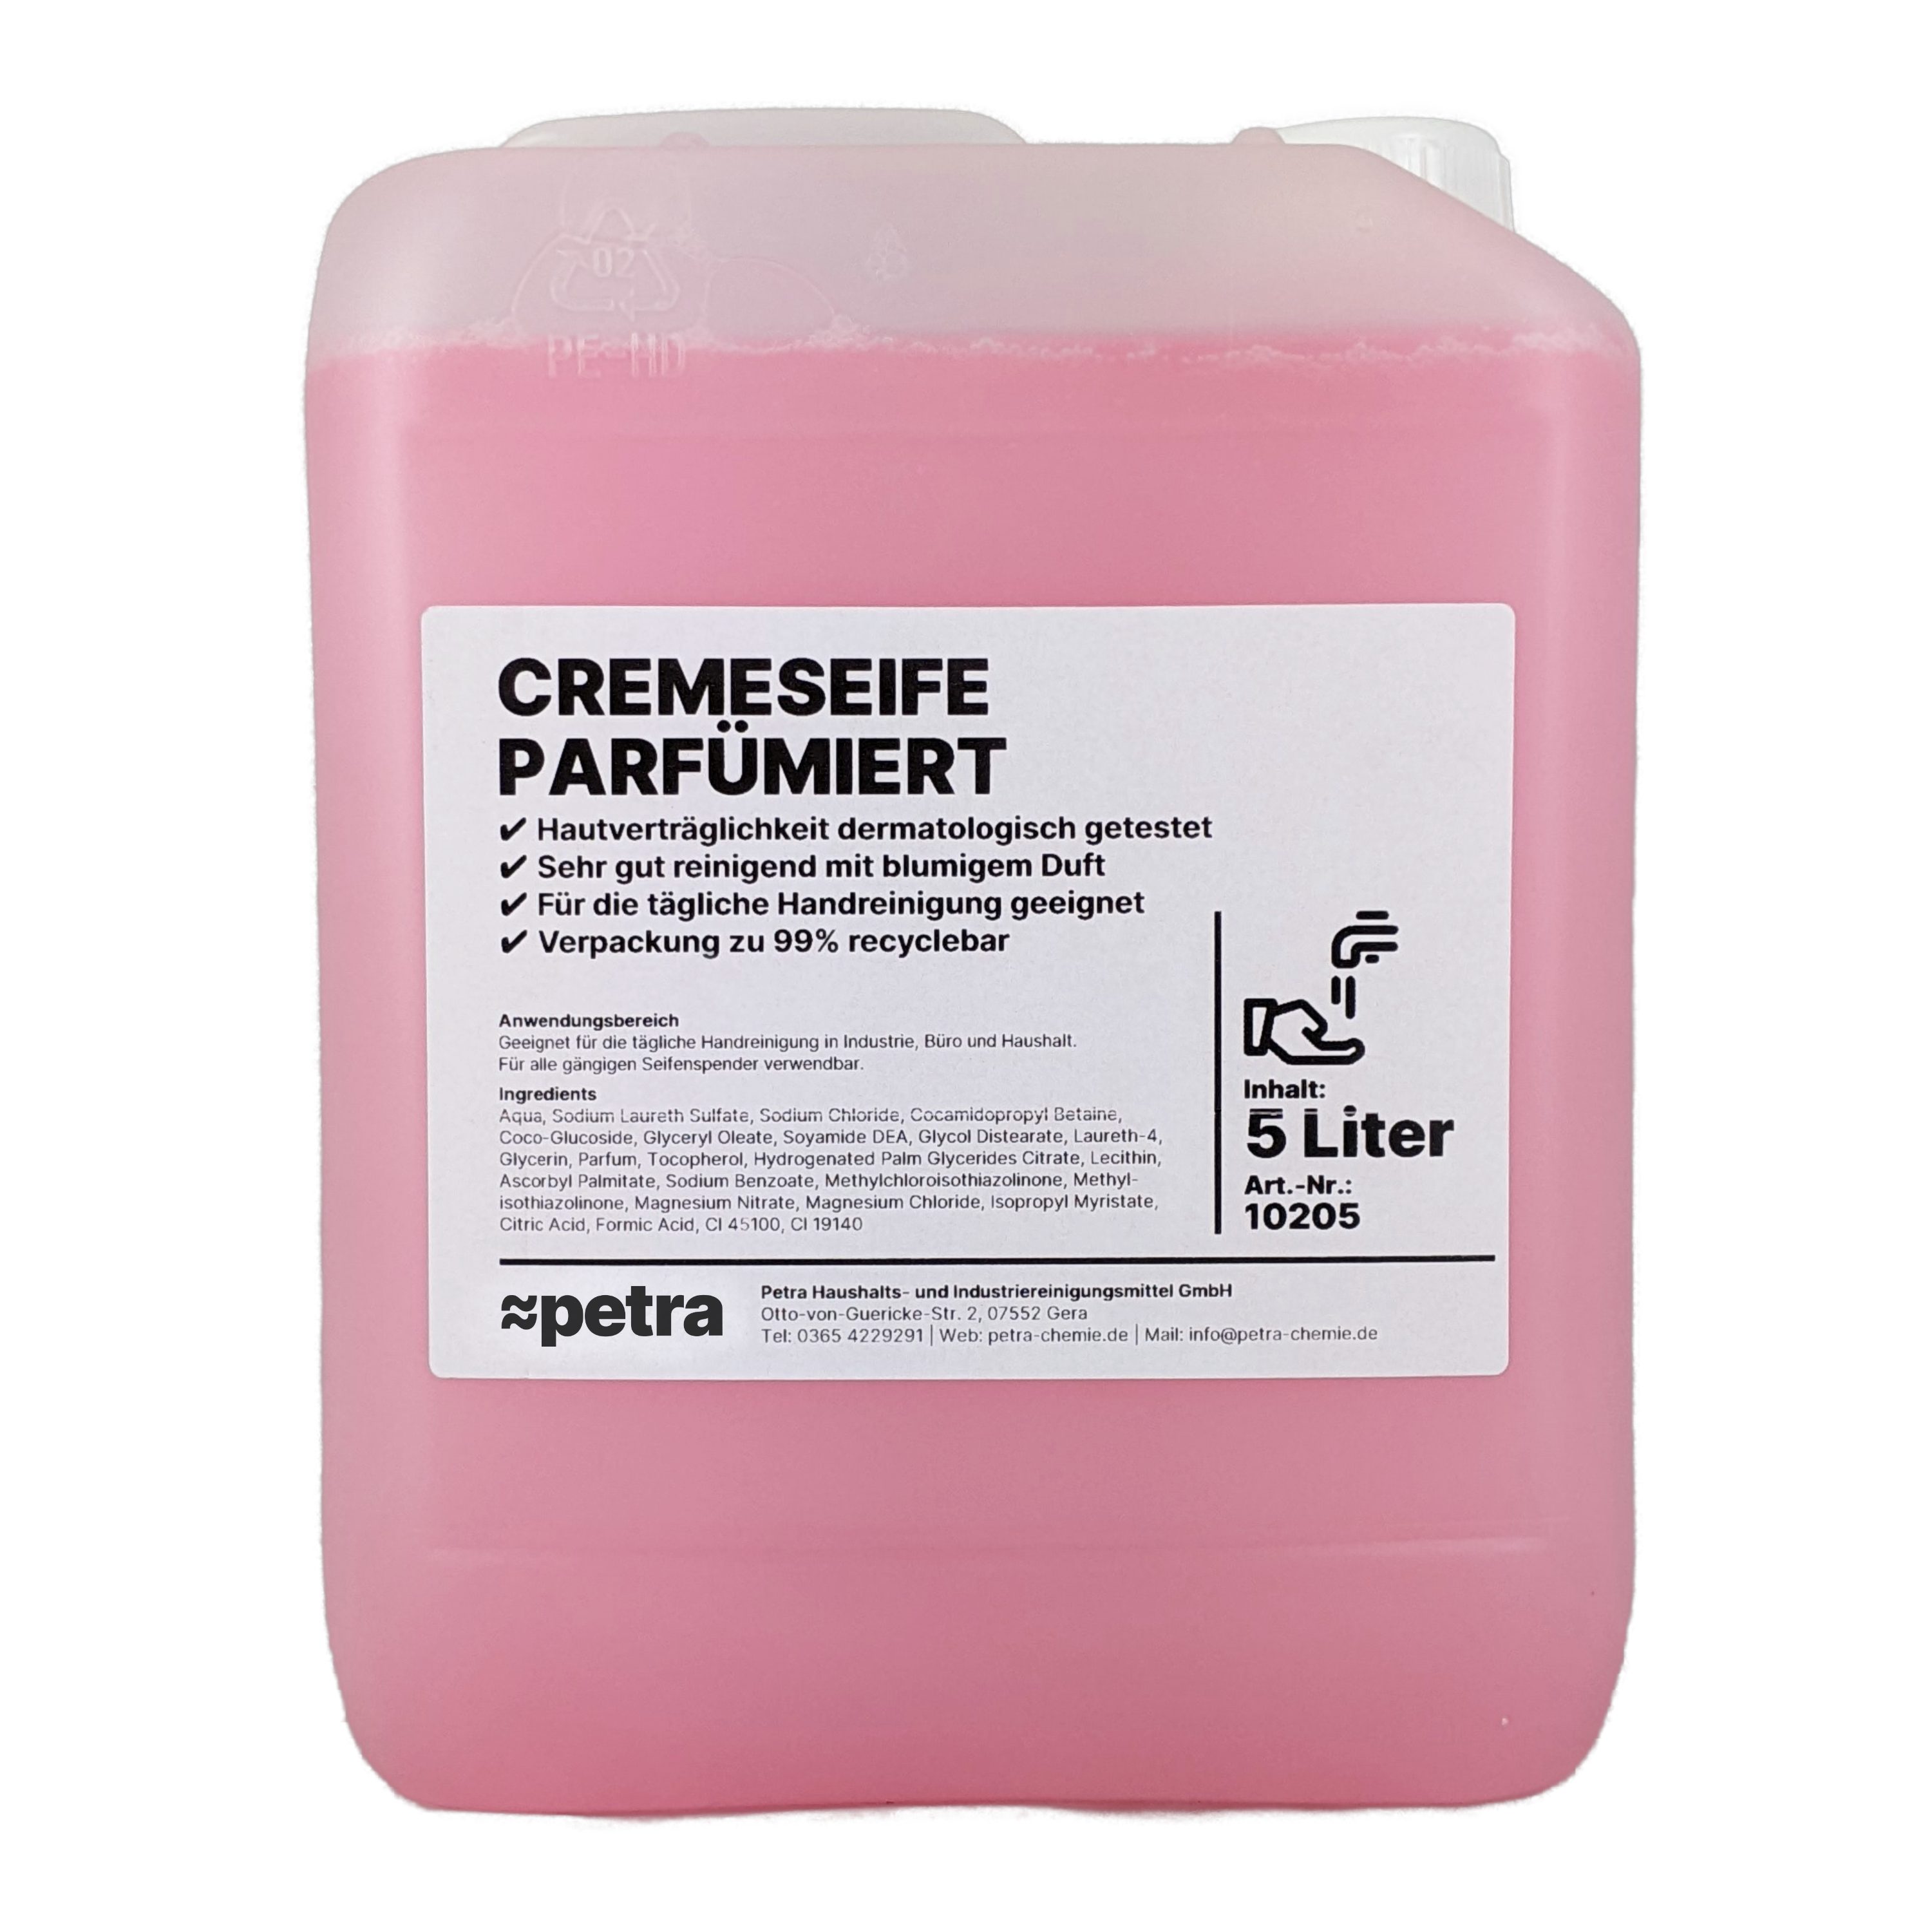 ≈petra Flüssigseife Cremeseife parfümiert [2x5 Liter Kanister], besonders geeignet zum Nachfüllen von Seifenspendern